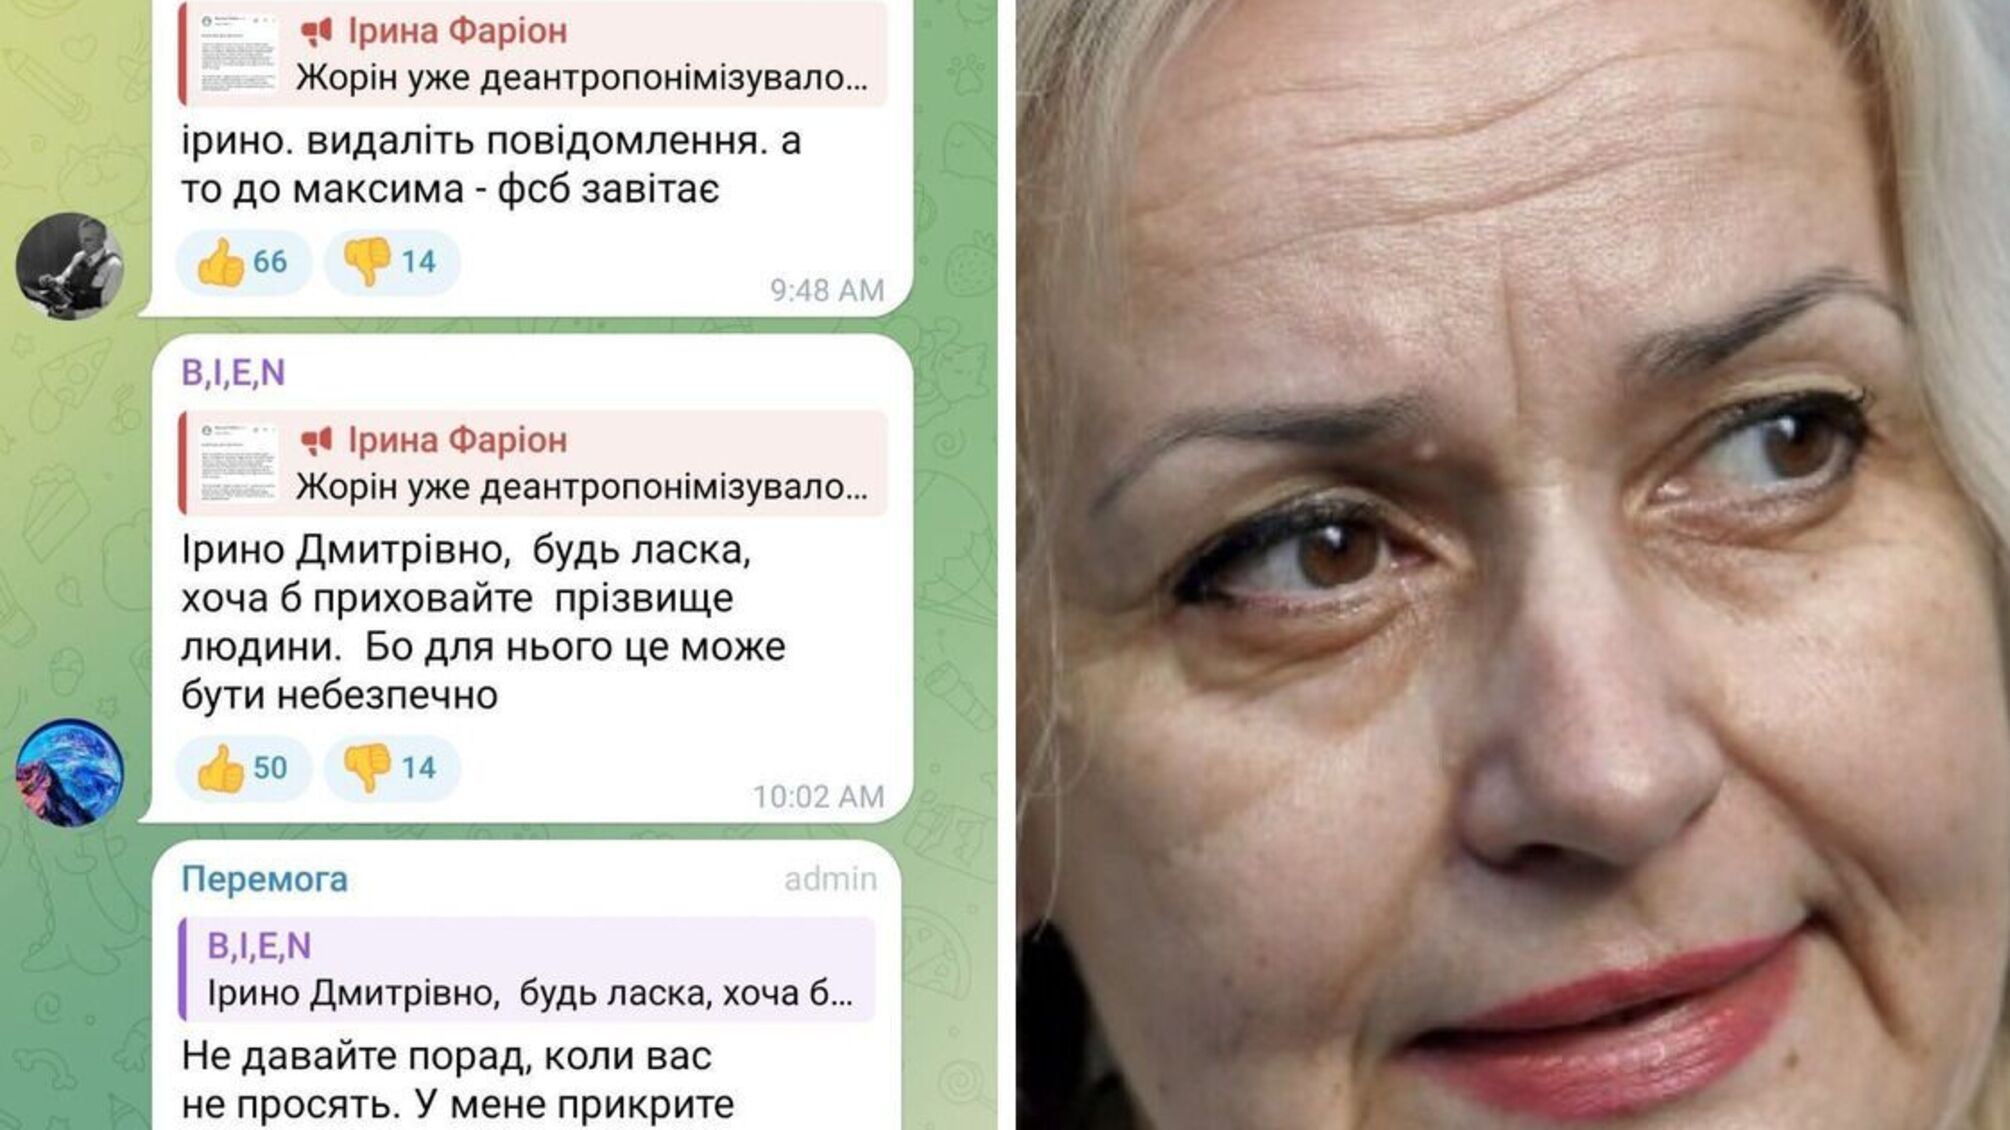 Из-за скандальной переписки Ирины Фарион задержали проукраинского студента в оккупированном Крыму